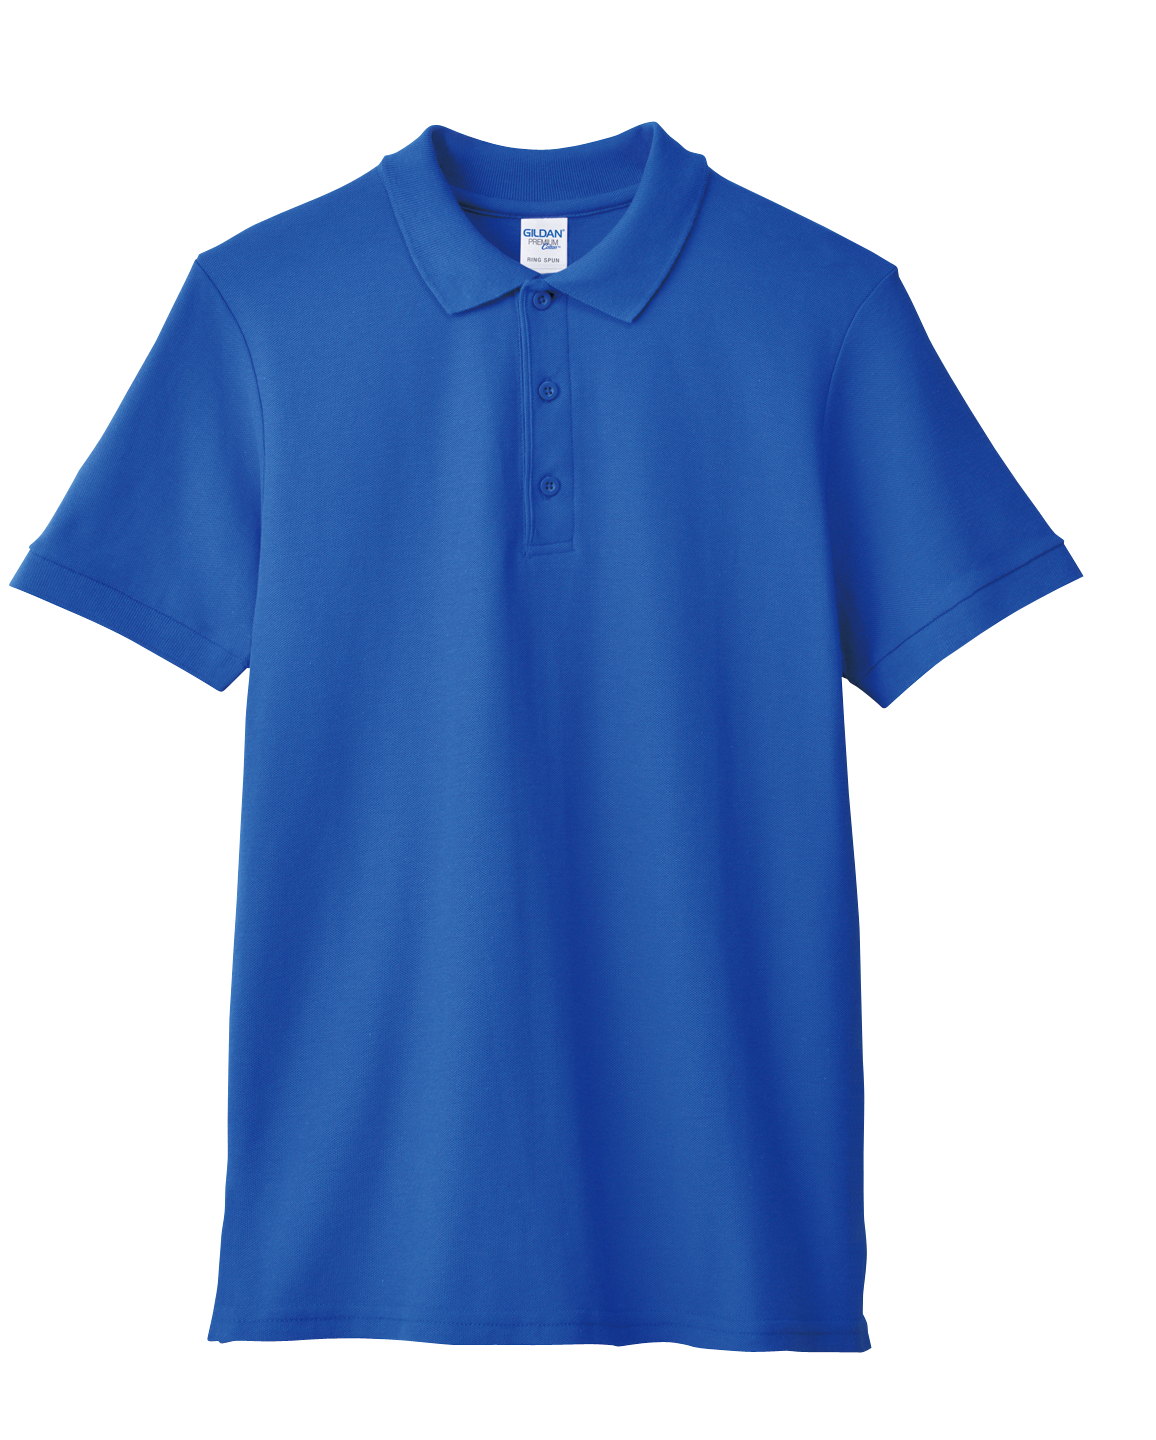 GILDAN Premium Cotton Polo 6800 220GSMCotton Unisex T-Shirt Best Men Women Adult Plain Cotton Double Pique Sport Shirt Comfort Polo Tee Group A NAVY/ROYAL/SAPPHIRE/FOREST GREEN/WHITE 6800